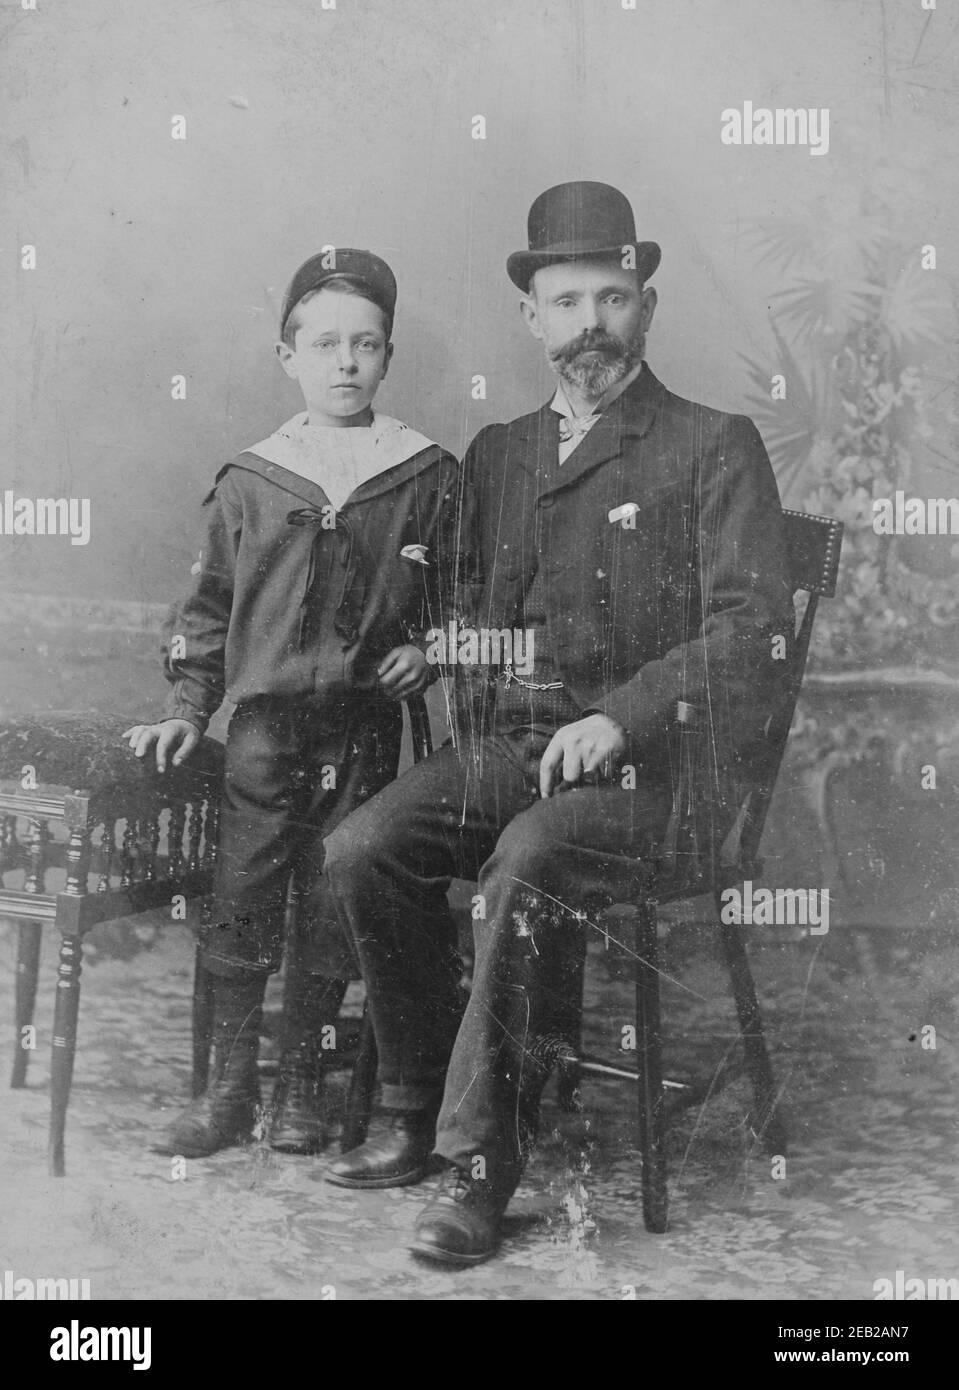 Fotografia monocromatica d'epoca di padre e figlio risalente agli inizi del 1900, era edoardiana. Foto Stock